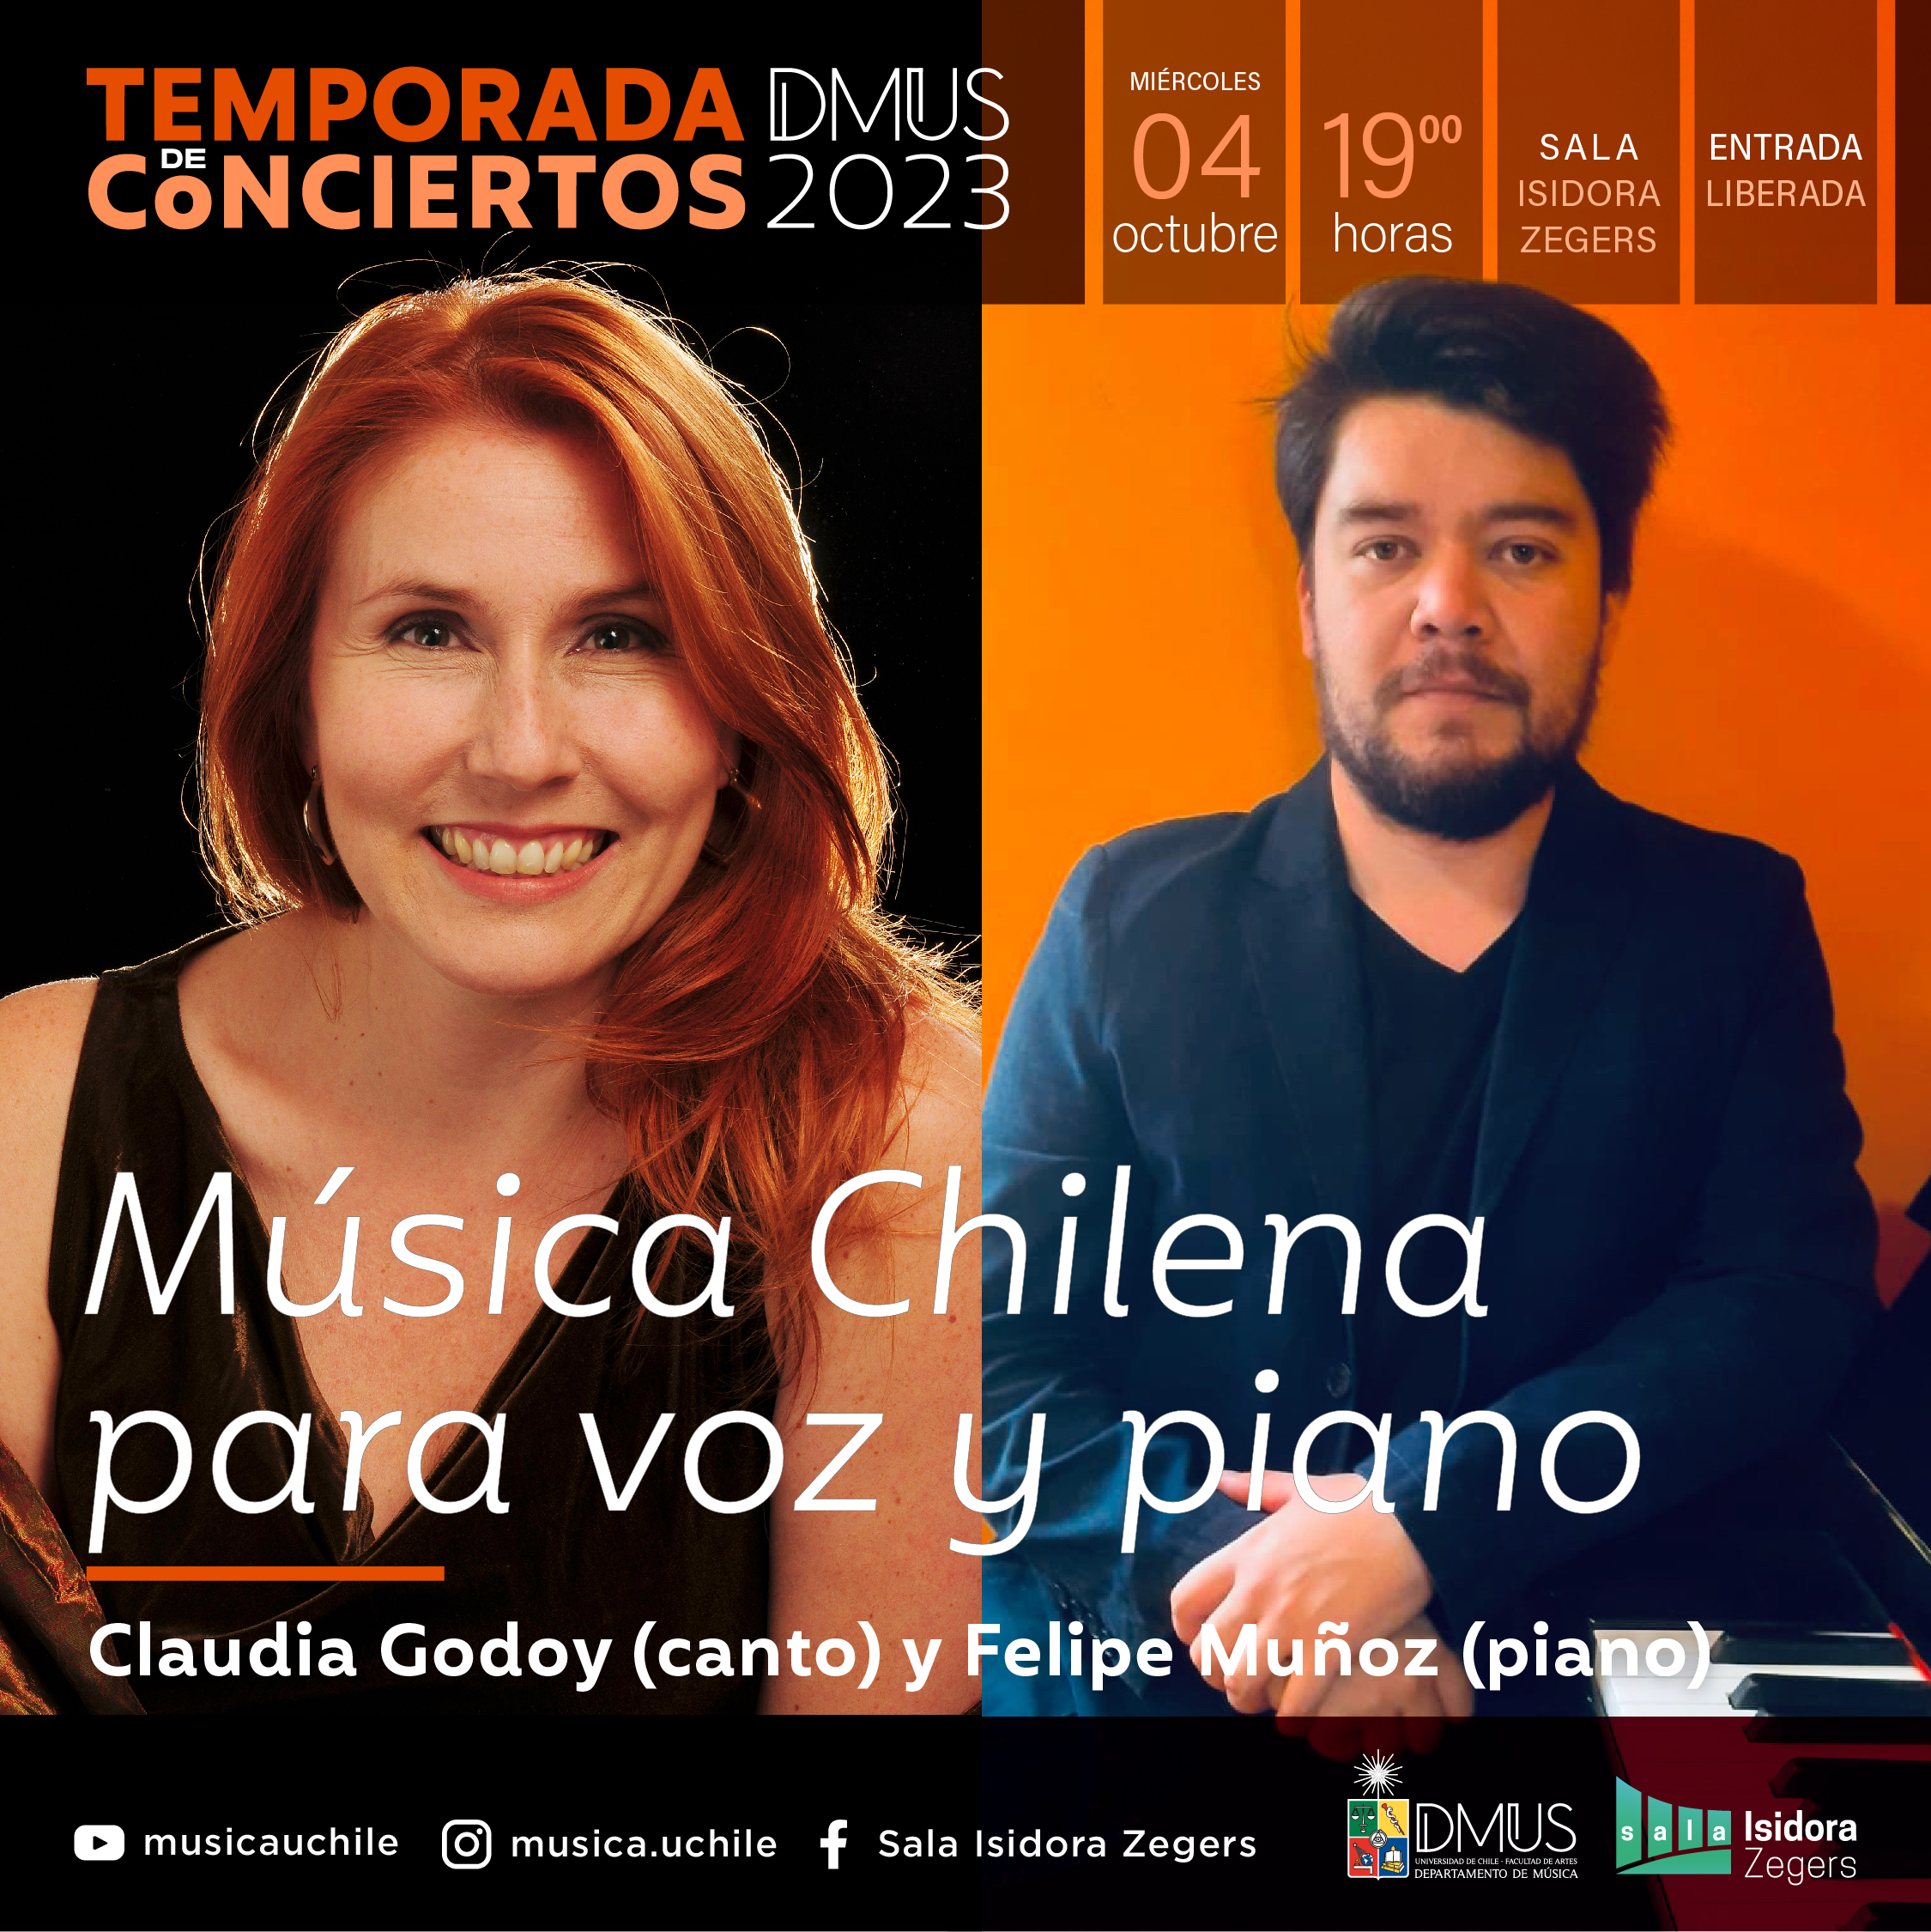 Concierto “Música chilena para voz y piano ” en sala Isidora Zegers